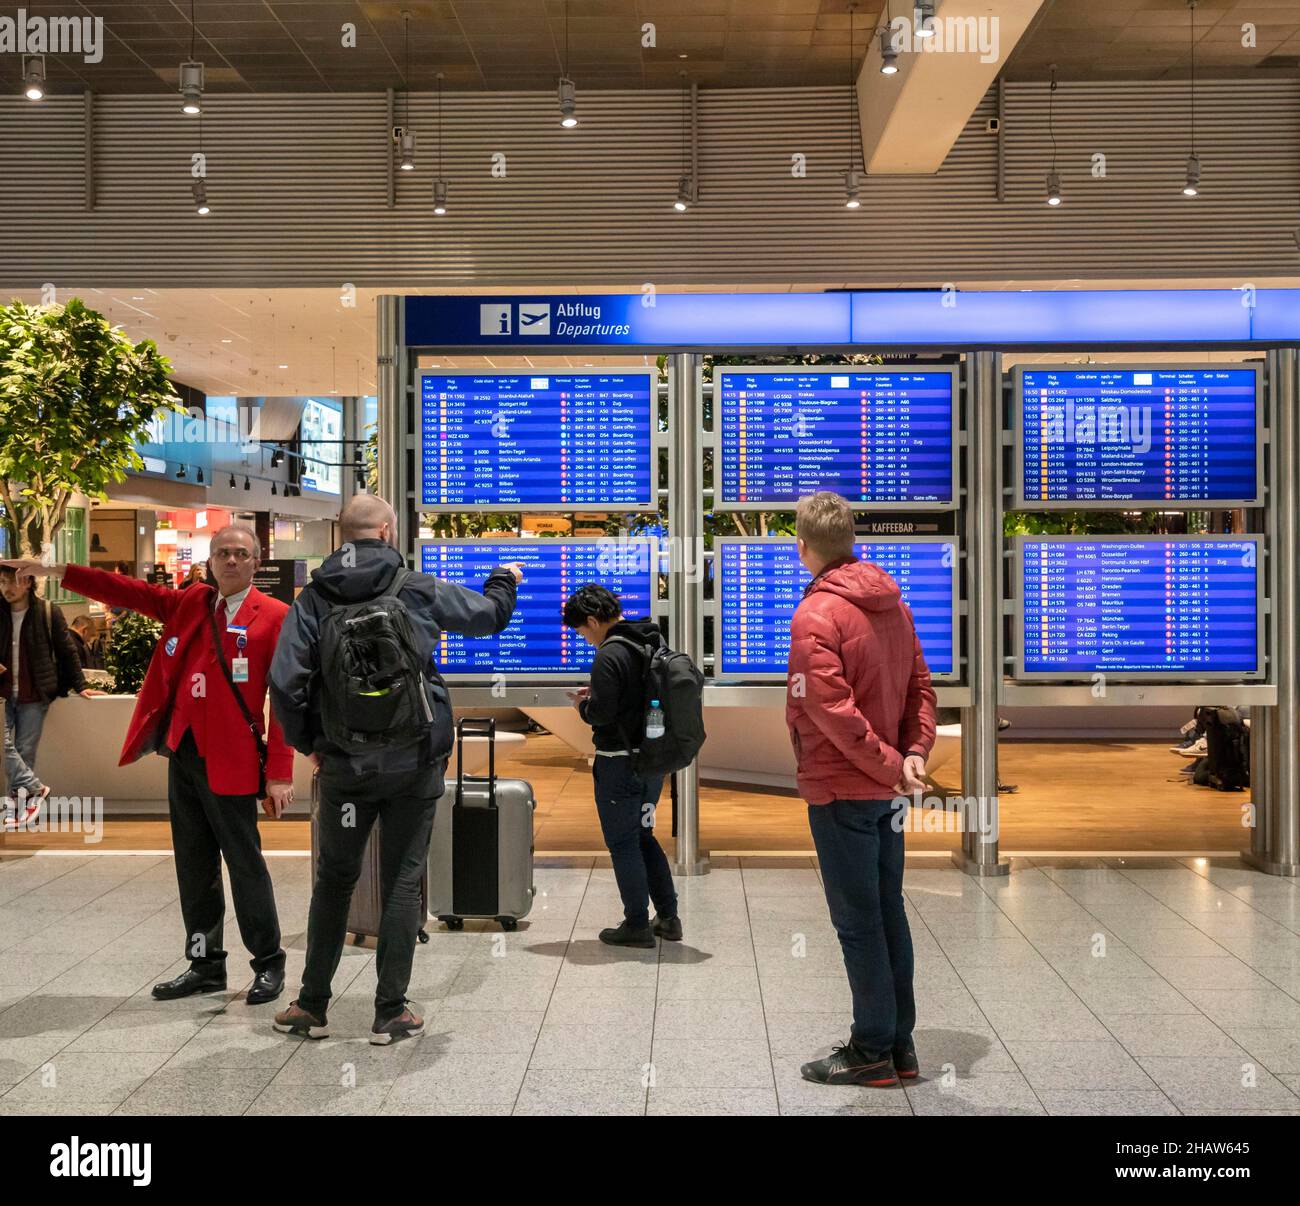 Passagiere und Mitarbeiter stehen vor den blauen Bildschirmen für die Abflugzeiten am Frankfurter Flughafen, Frankfurt, Hessen, Deutschland Stockfoto